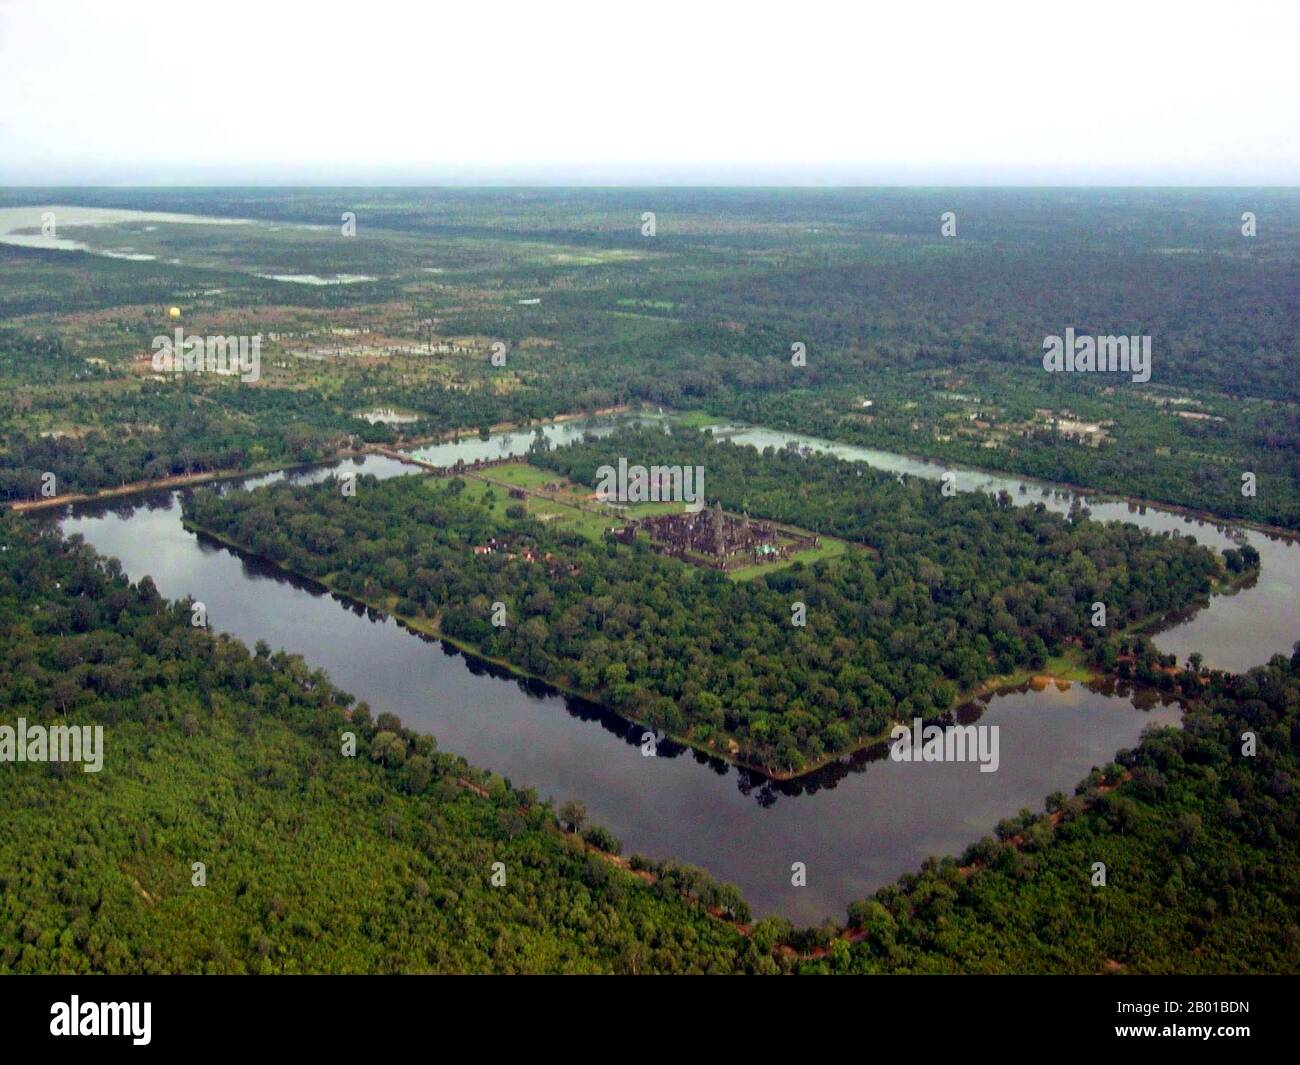 Kambodscha: Angkor Wat aus der Luft, einschließlich des Grabens und der zentralen Quincunx oder fünf Türme, die den Berg Meru, den hinduistischen Wohnsitz der Götter, darstellen. Foto von Charles J. Sharp (CC BY-SA 3,0 License), 2005. Angkor Wat wurde für König Suryavarman II. (R. 1113-1150) im frühen 12.. Jahrhundert als Staatstempel und Hauptstadt. Als besterhaltener Tempel am Standort Angkor ist er der einzige, der seit seiner Gründung ein bedeutendes religiöses Zentrum geblieben ist - zuerst Hindu, dem gott Vishnu gewidmet, dann Buddhist. Es ist das größte religiöse Gebäude der Welt. Stockfoto